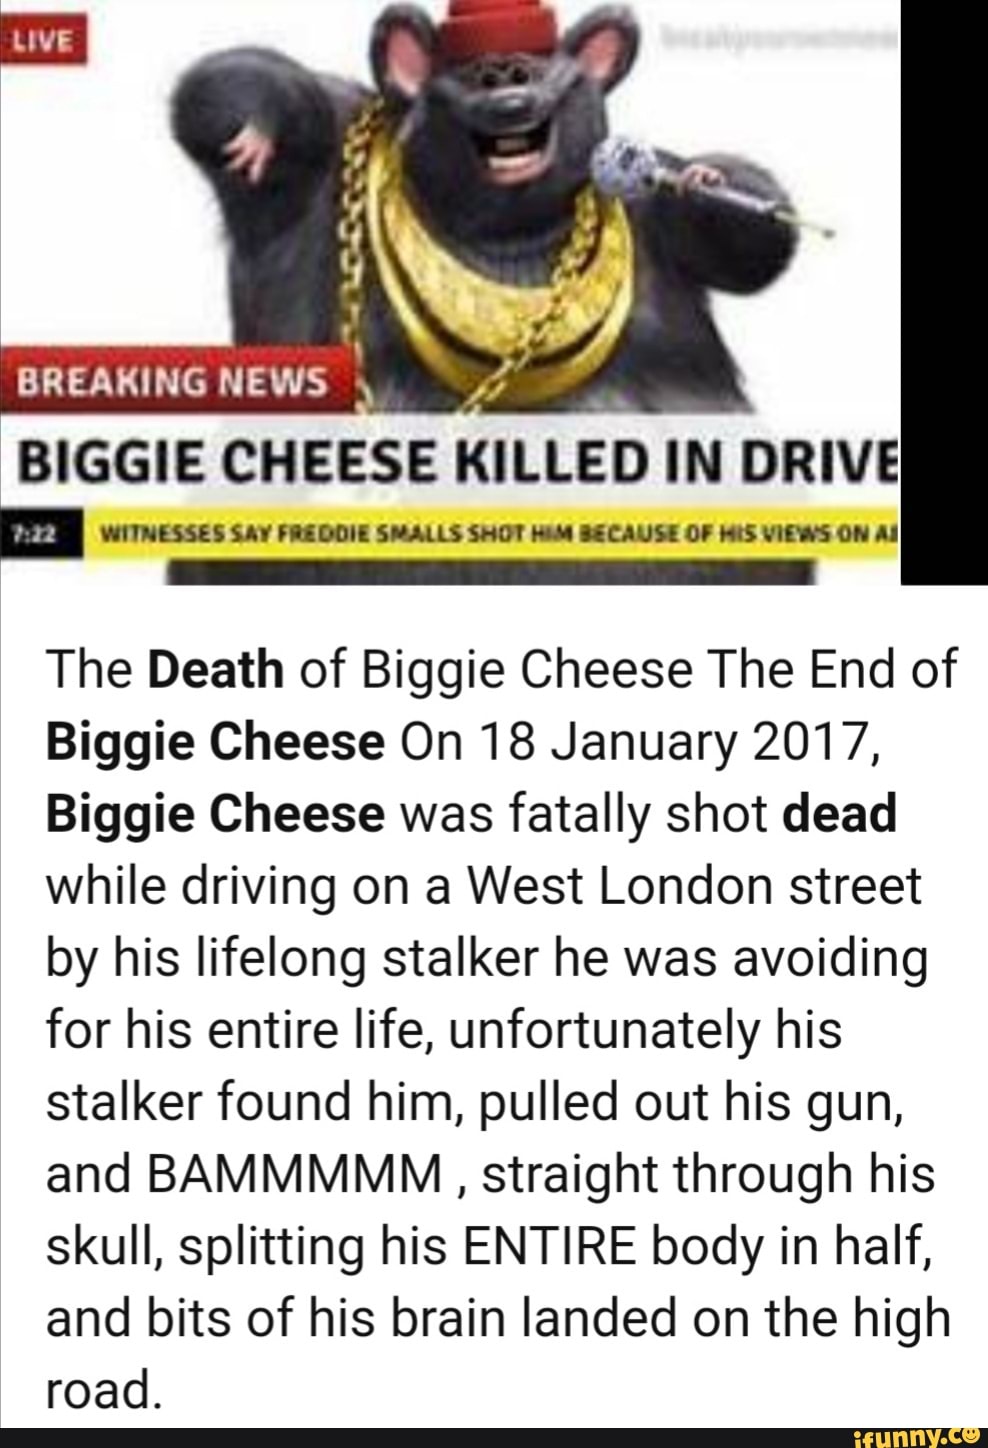 Biggie Cheese man 😭😭😭